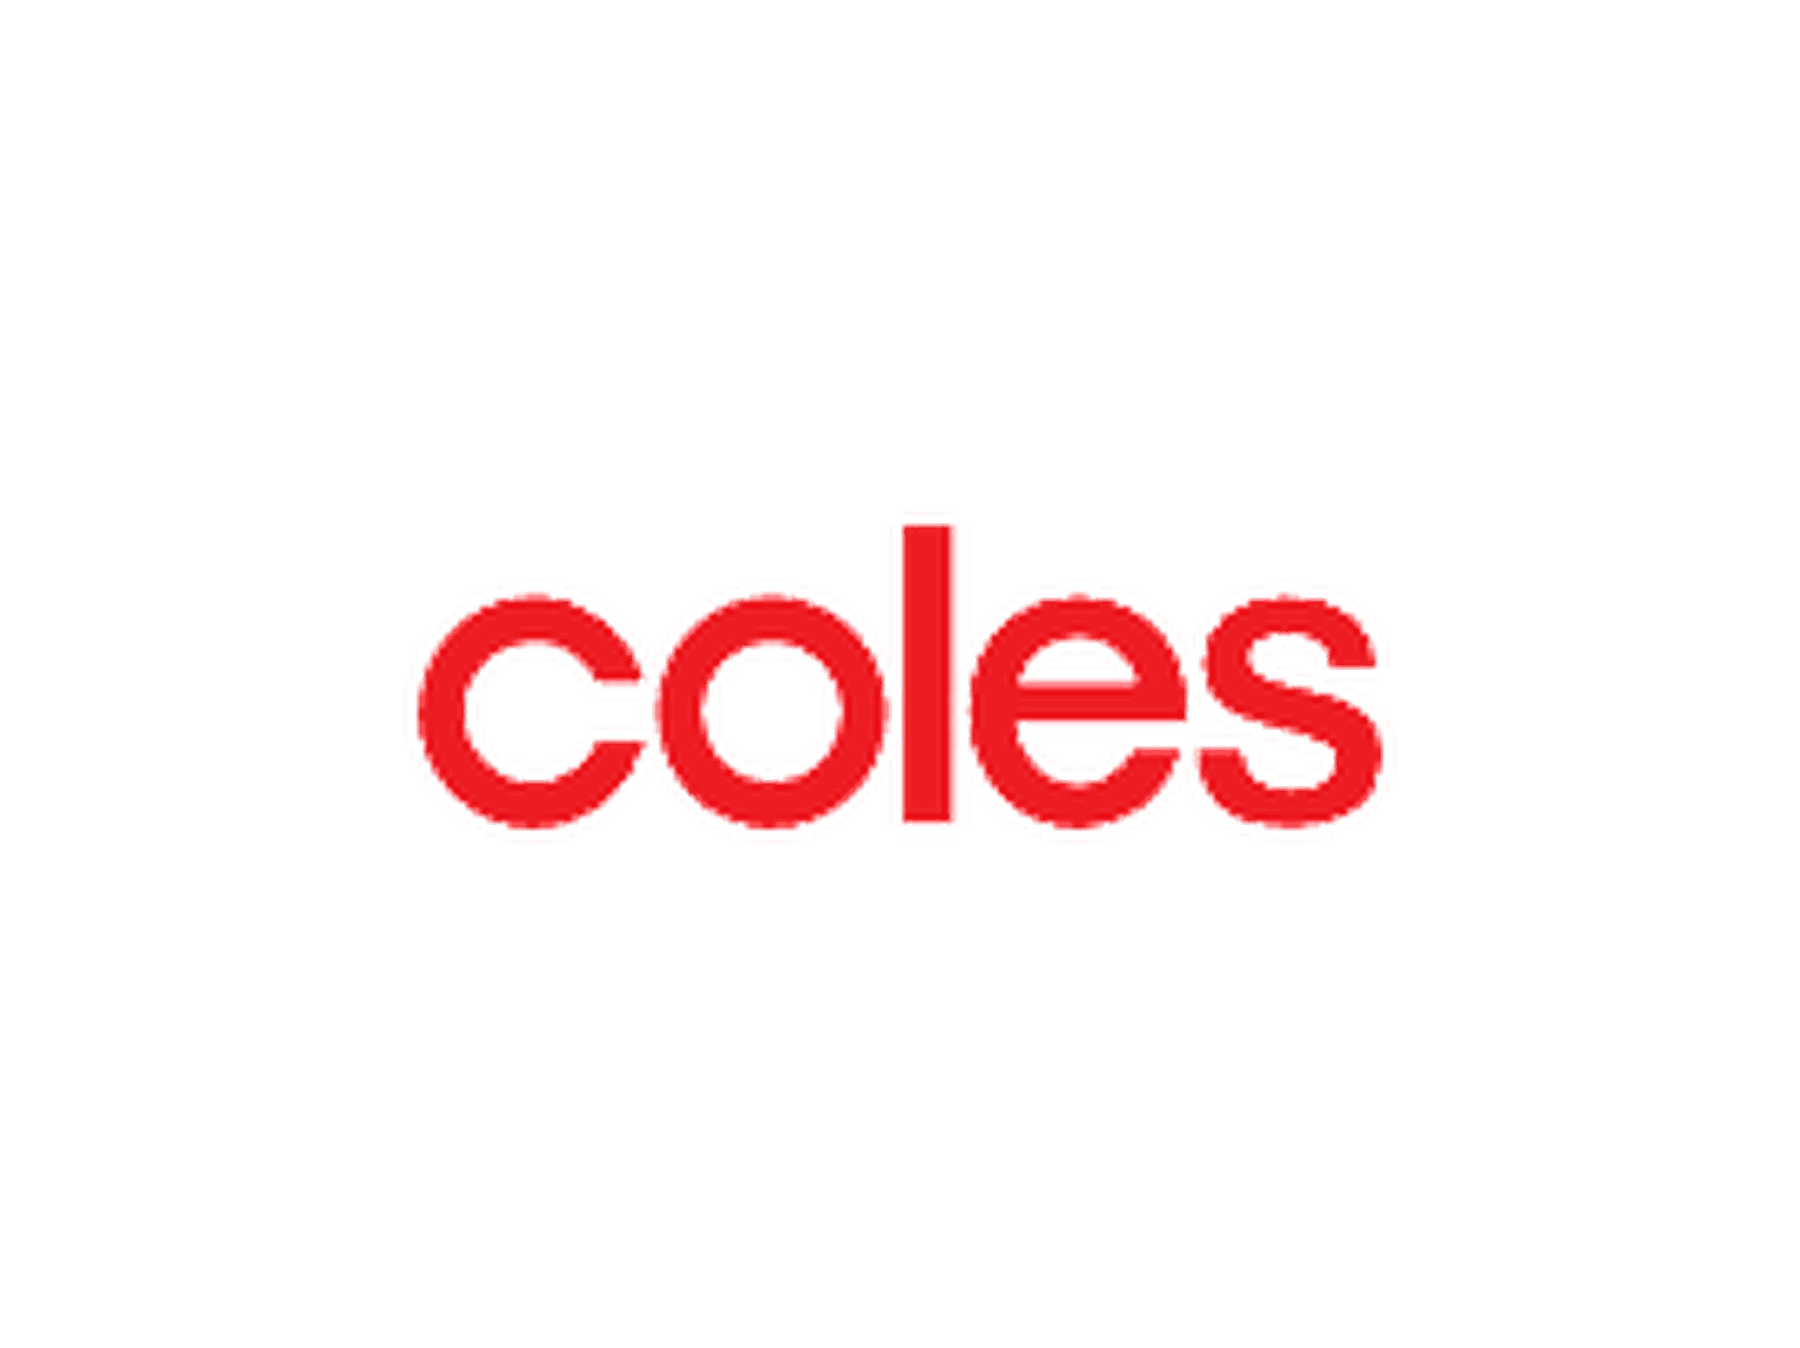 Coles Promo Code